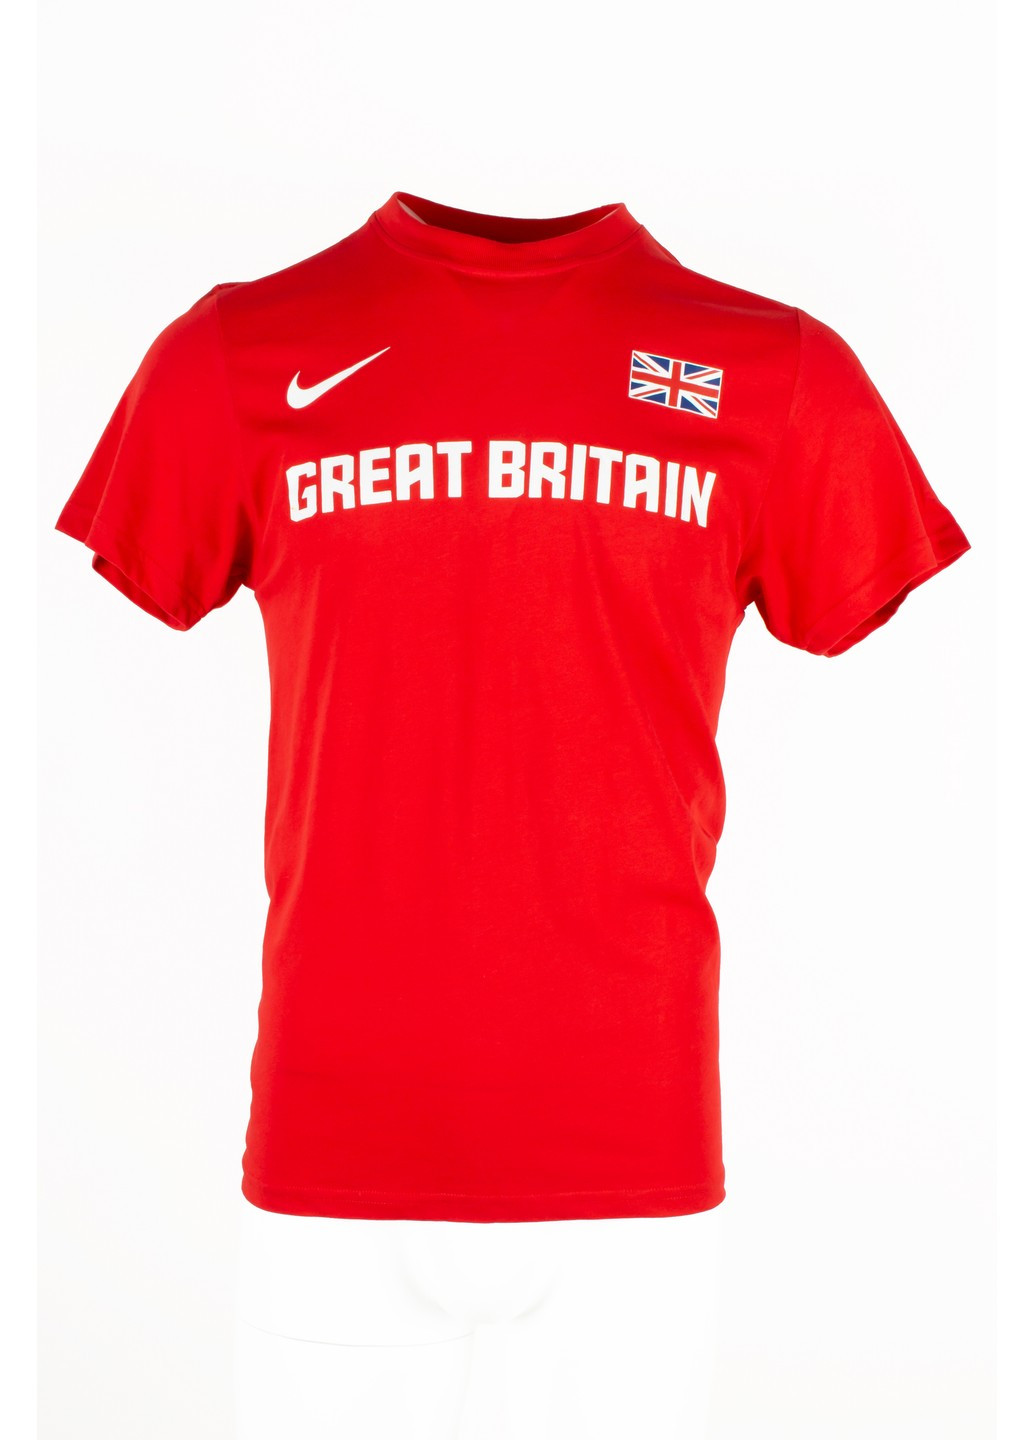 Красная футболка мужская dri-fit 652578 красная Nike